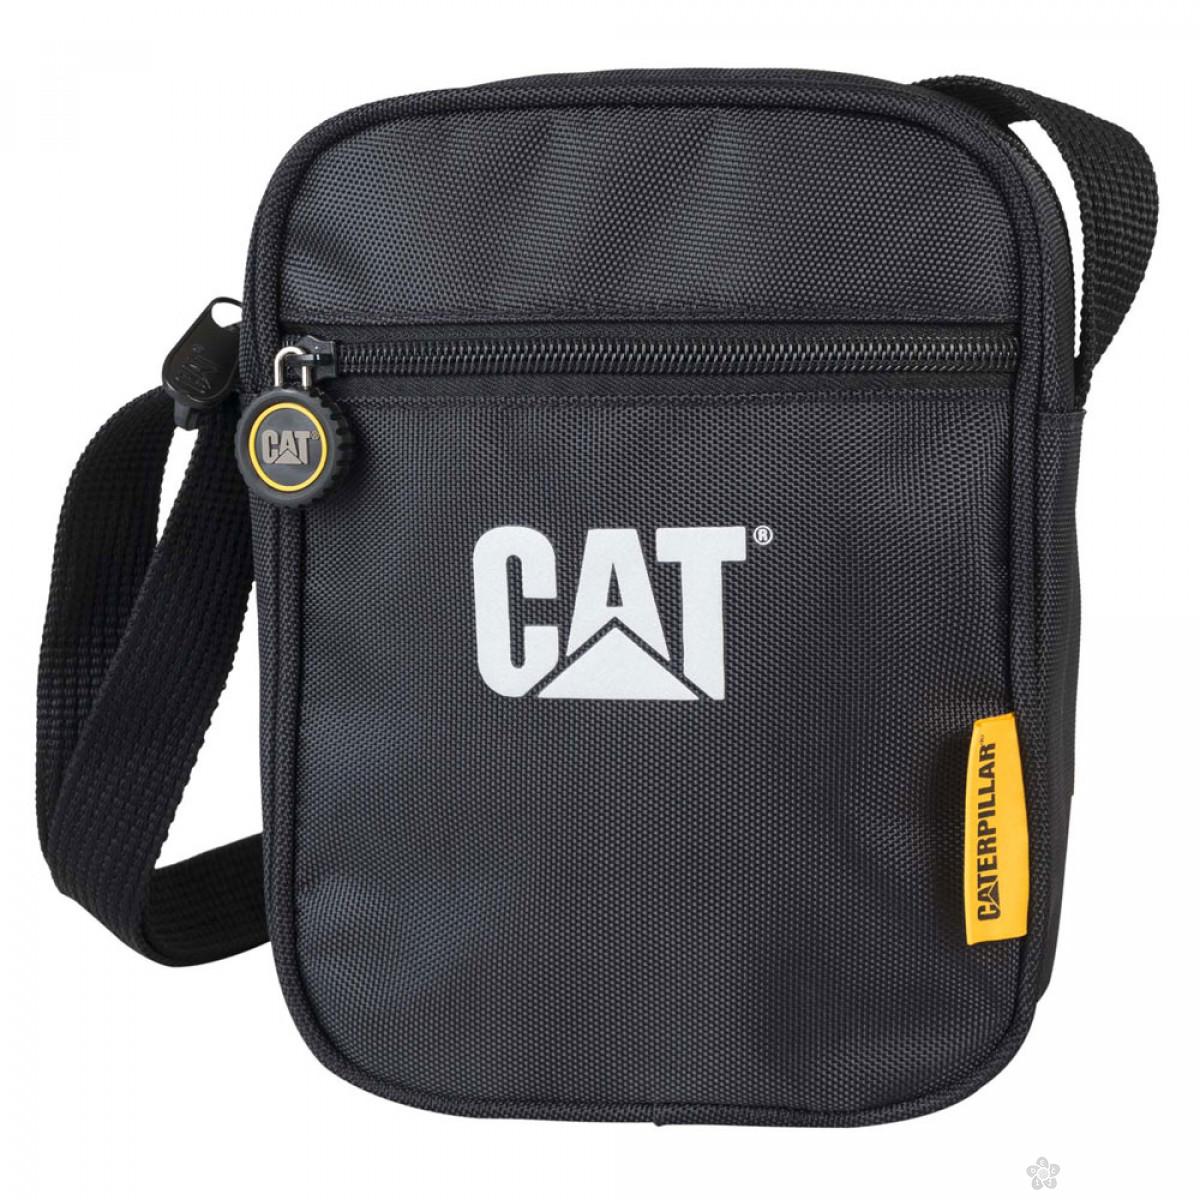 City Bag Cat 17575 